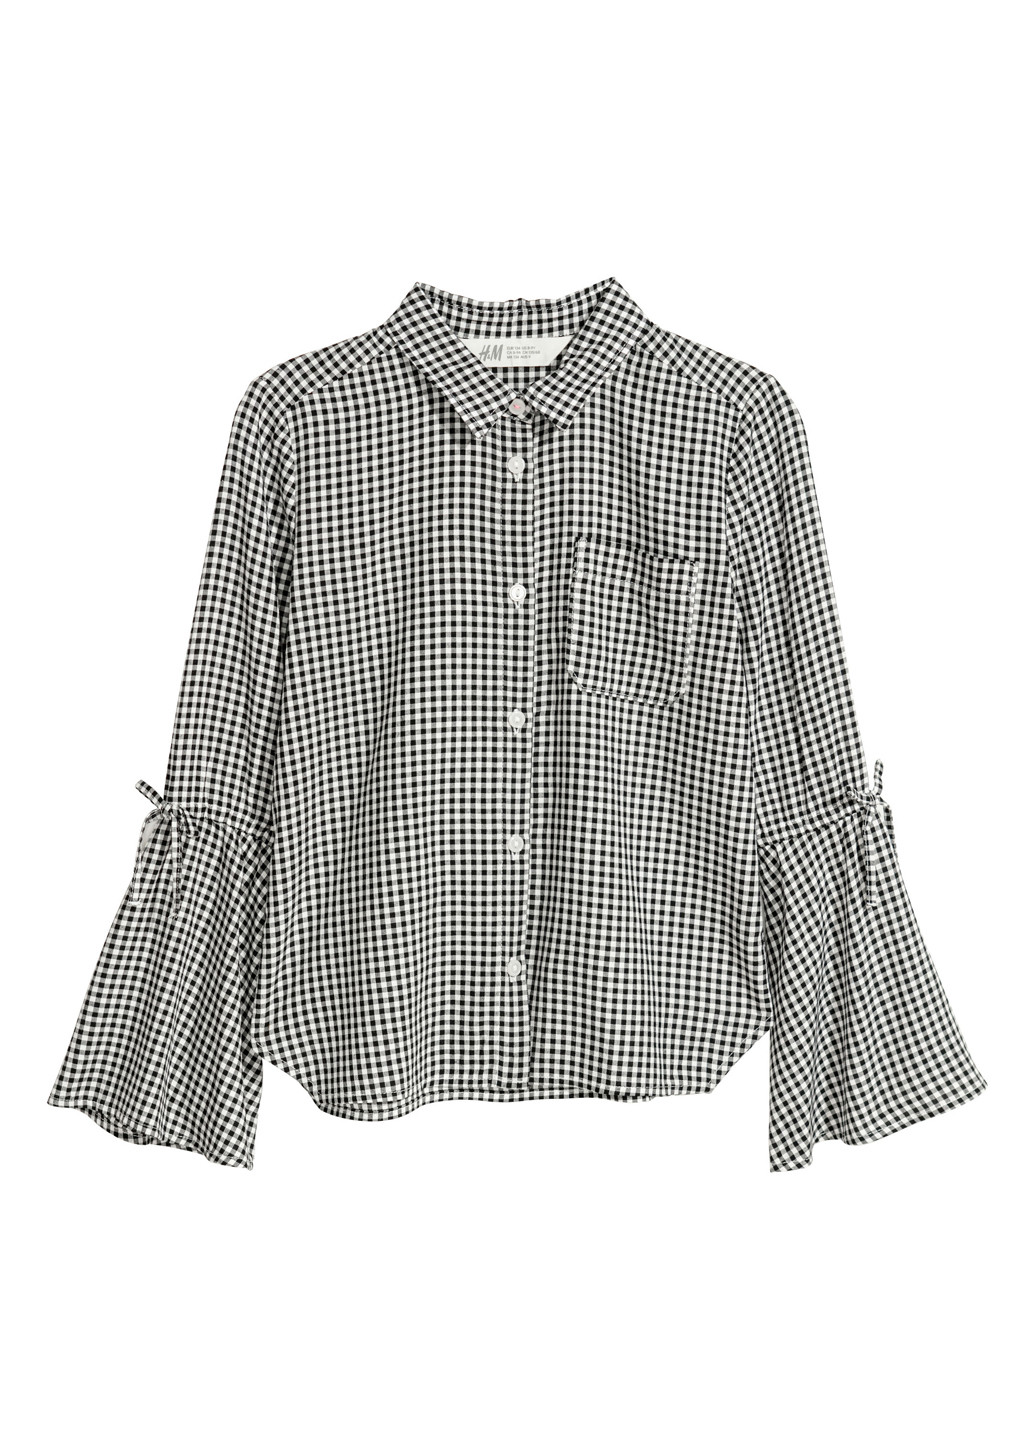 Черно-белая блузка с длинным рукавом H&M демисезонная